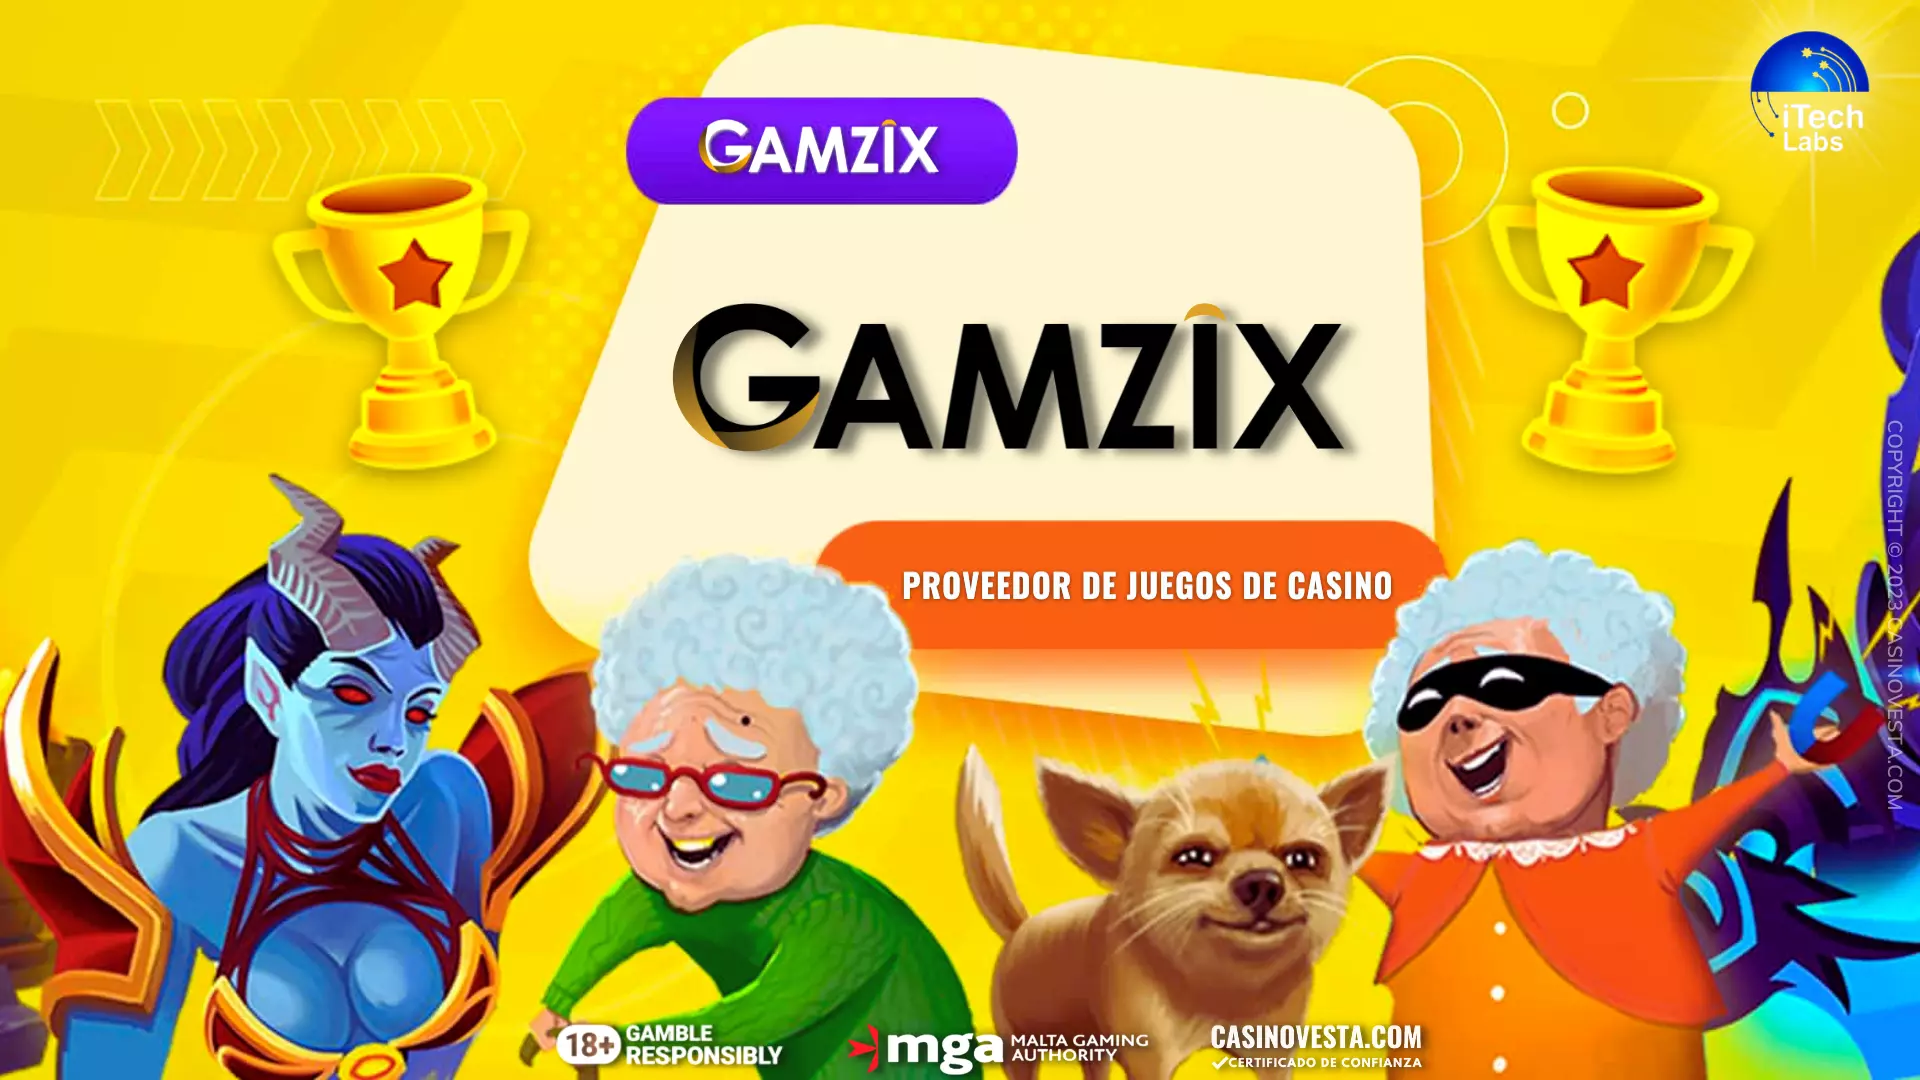 Reseña del proveedor de juegos de casino Gamzix